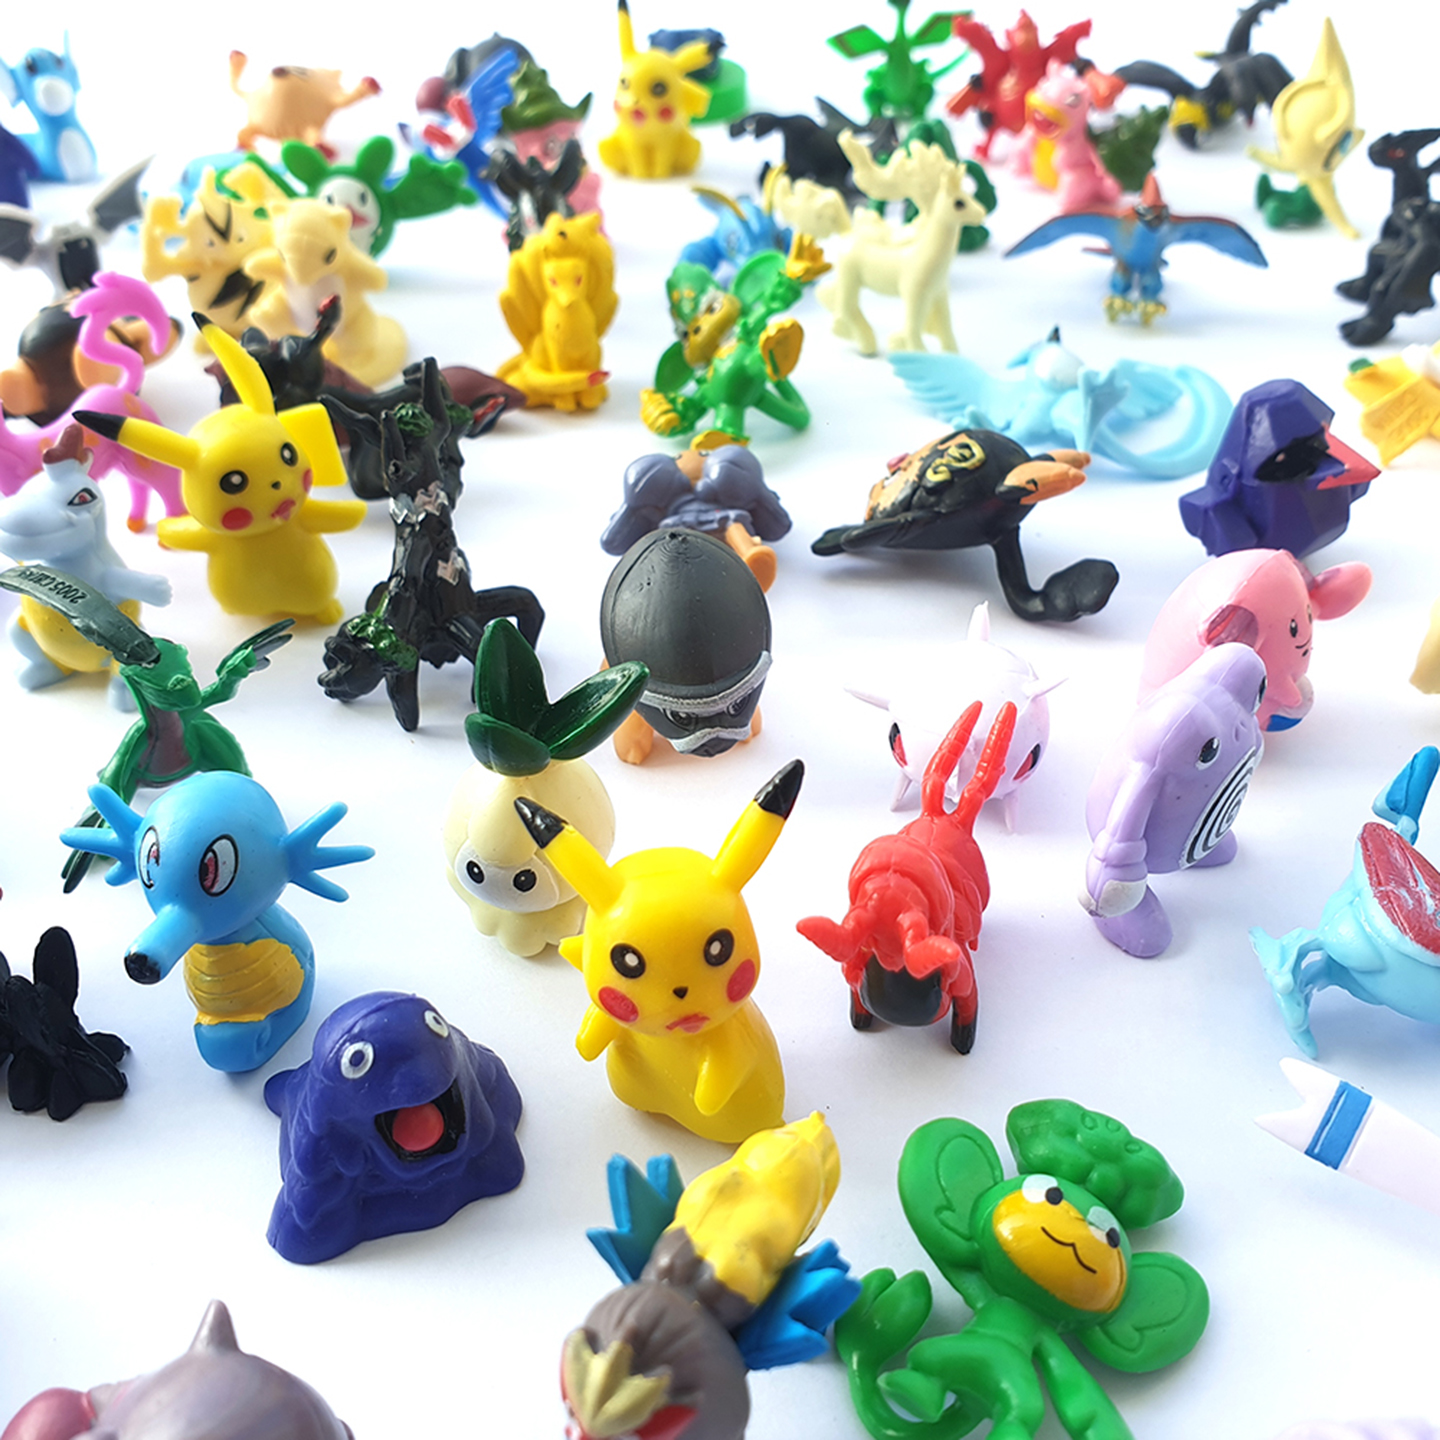 [HCM]Mô hình đồ chơi mini 72 Pokemon nhựa an toàn cho bé - mô hình Pokemon Figure Anime mega huyền thoại đa hệ không trùng lặp nhiều màu sắc kích thước 2-3 cm giá rẻ vô đối New4all